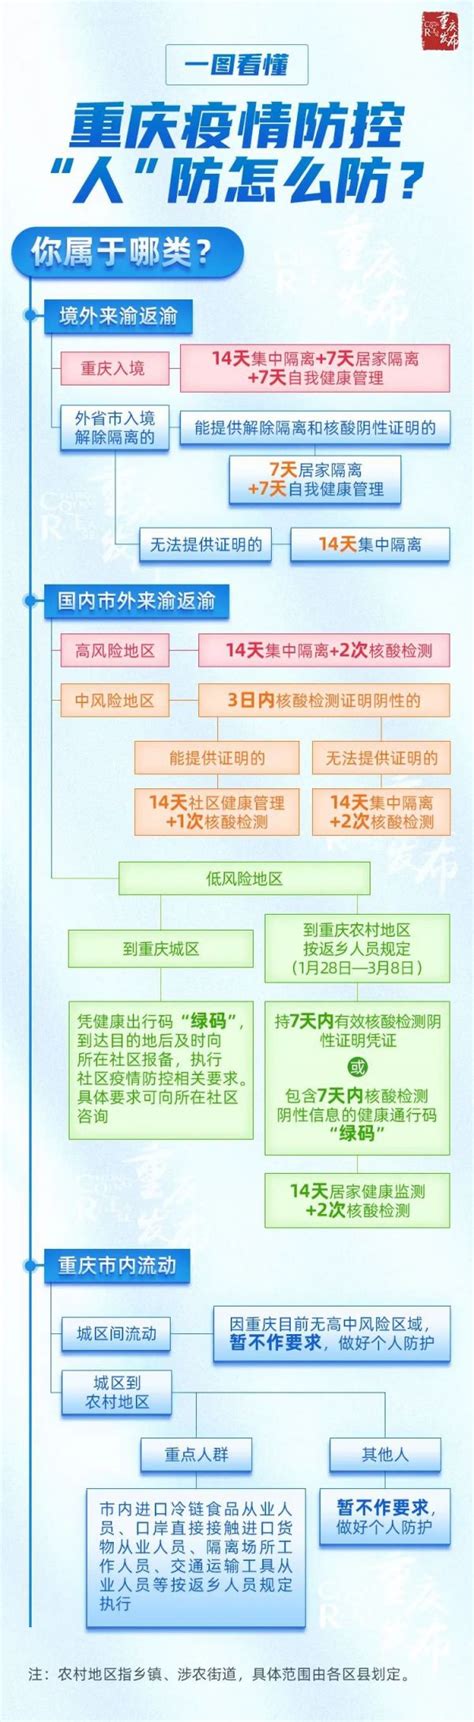 2021重庆疫情防控要求图解- 重庆本地宝